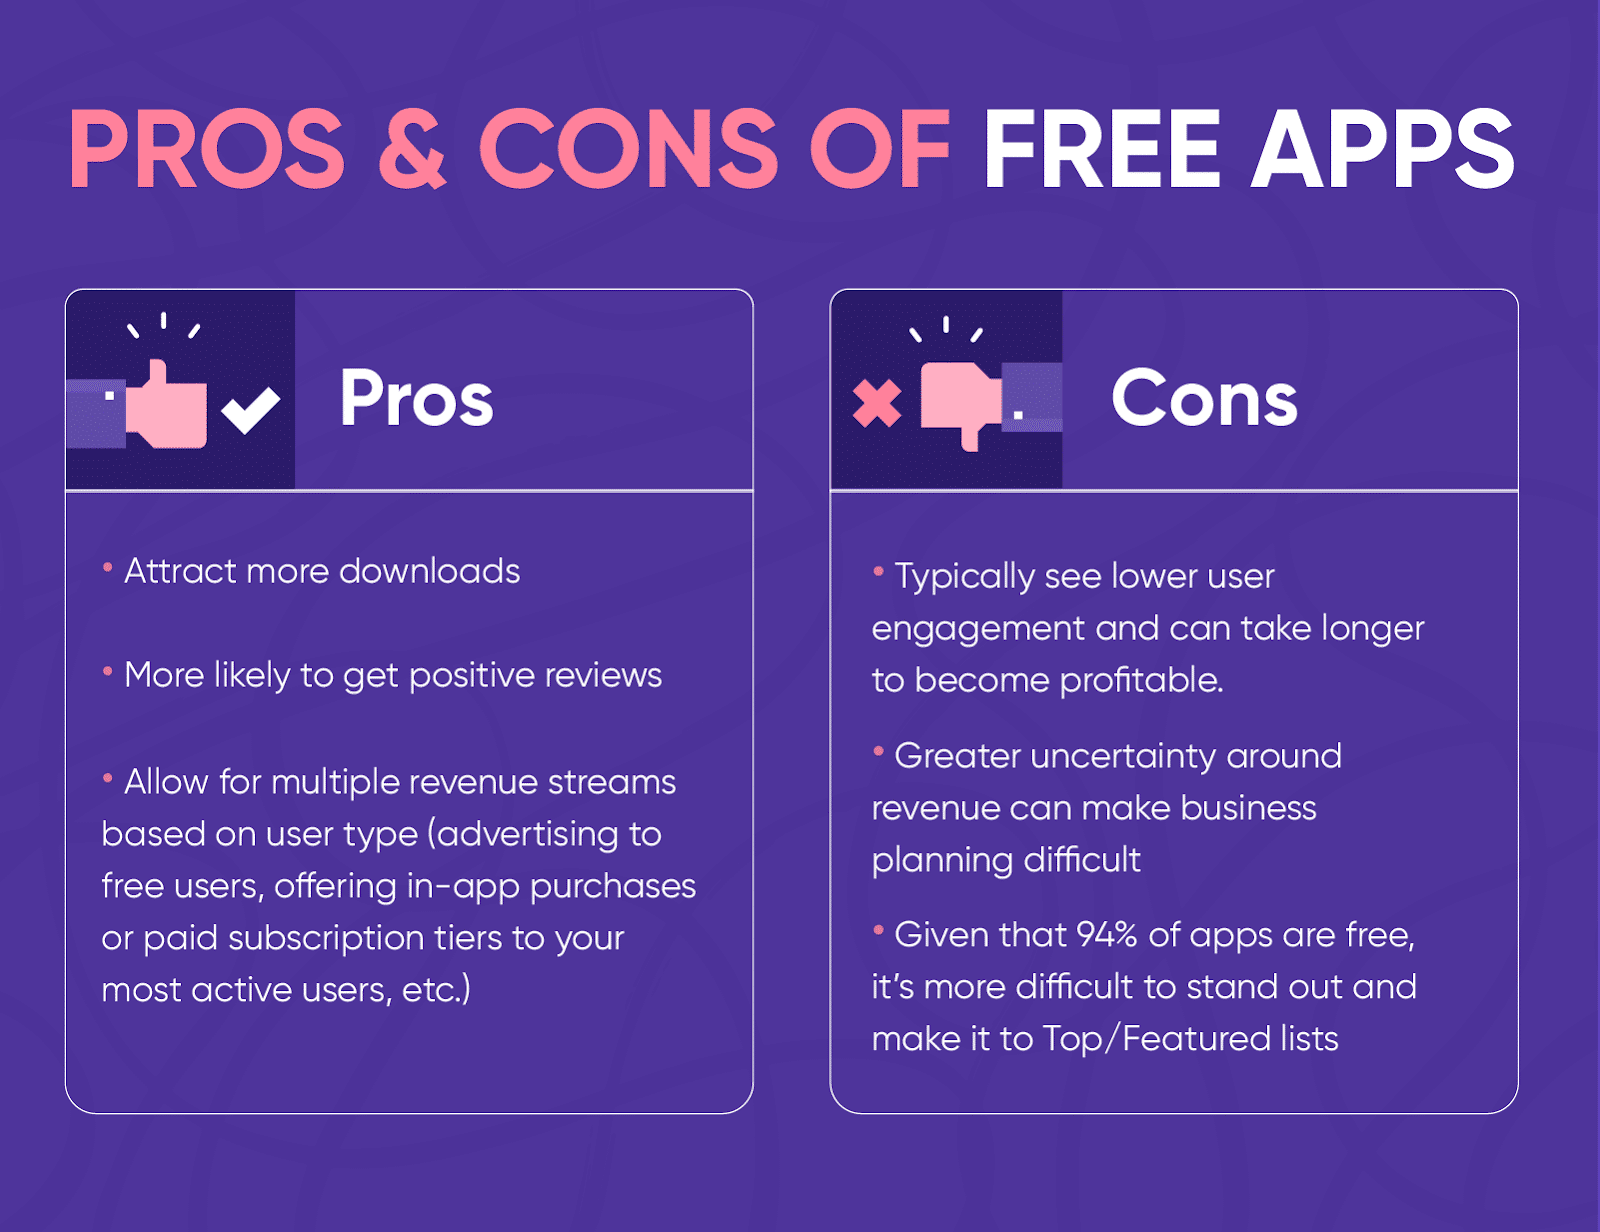 Infografica con due liste che mostrano i pro e i contro delle app gratuite.